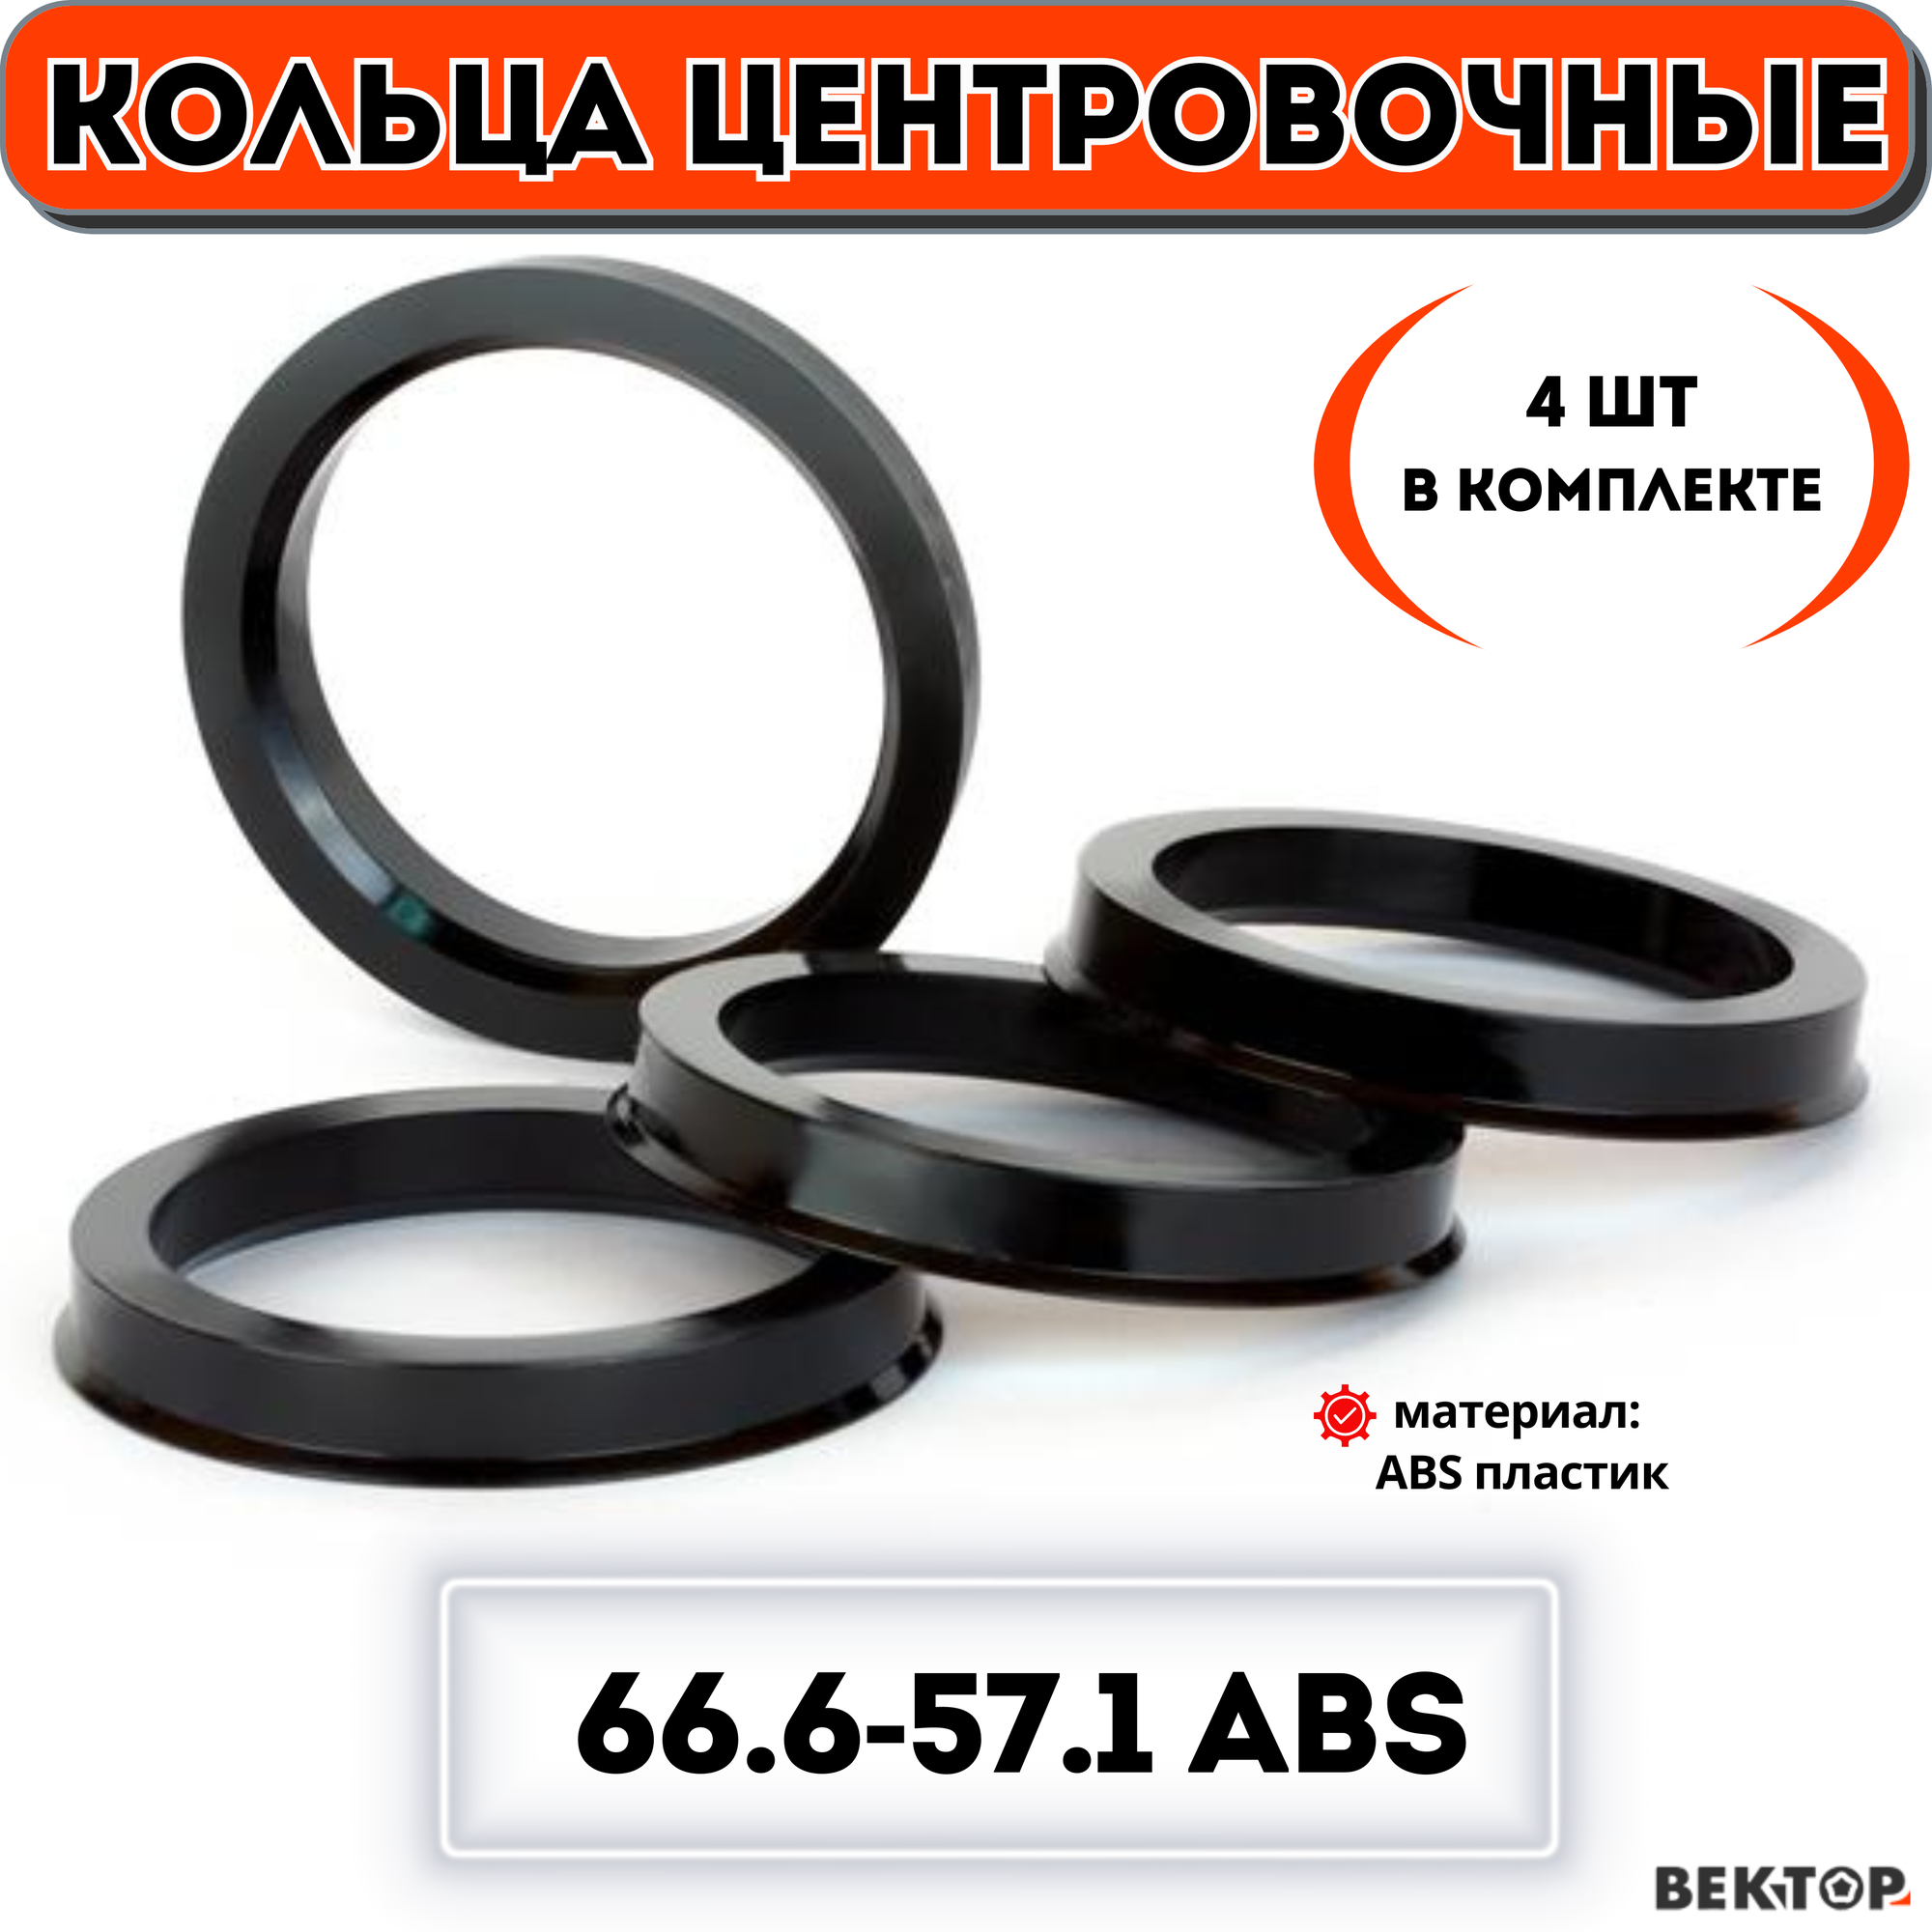 Кольца центровочные для автомобильных дисков 666-571 ABS (к-т 4 шт.)